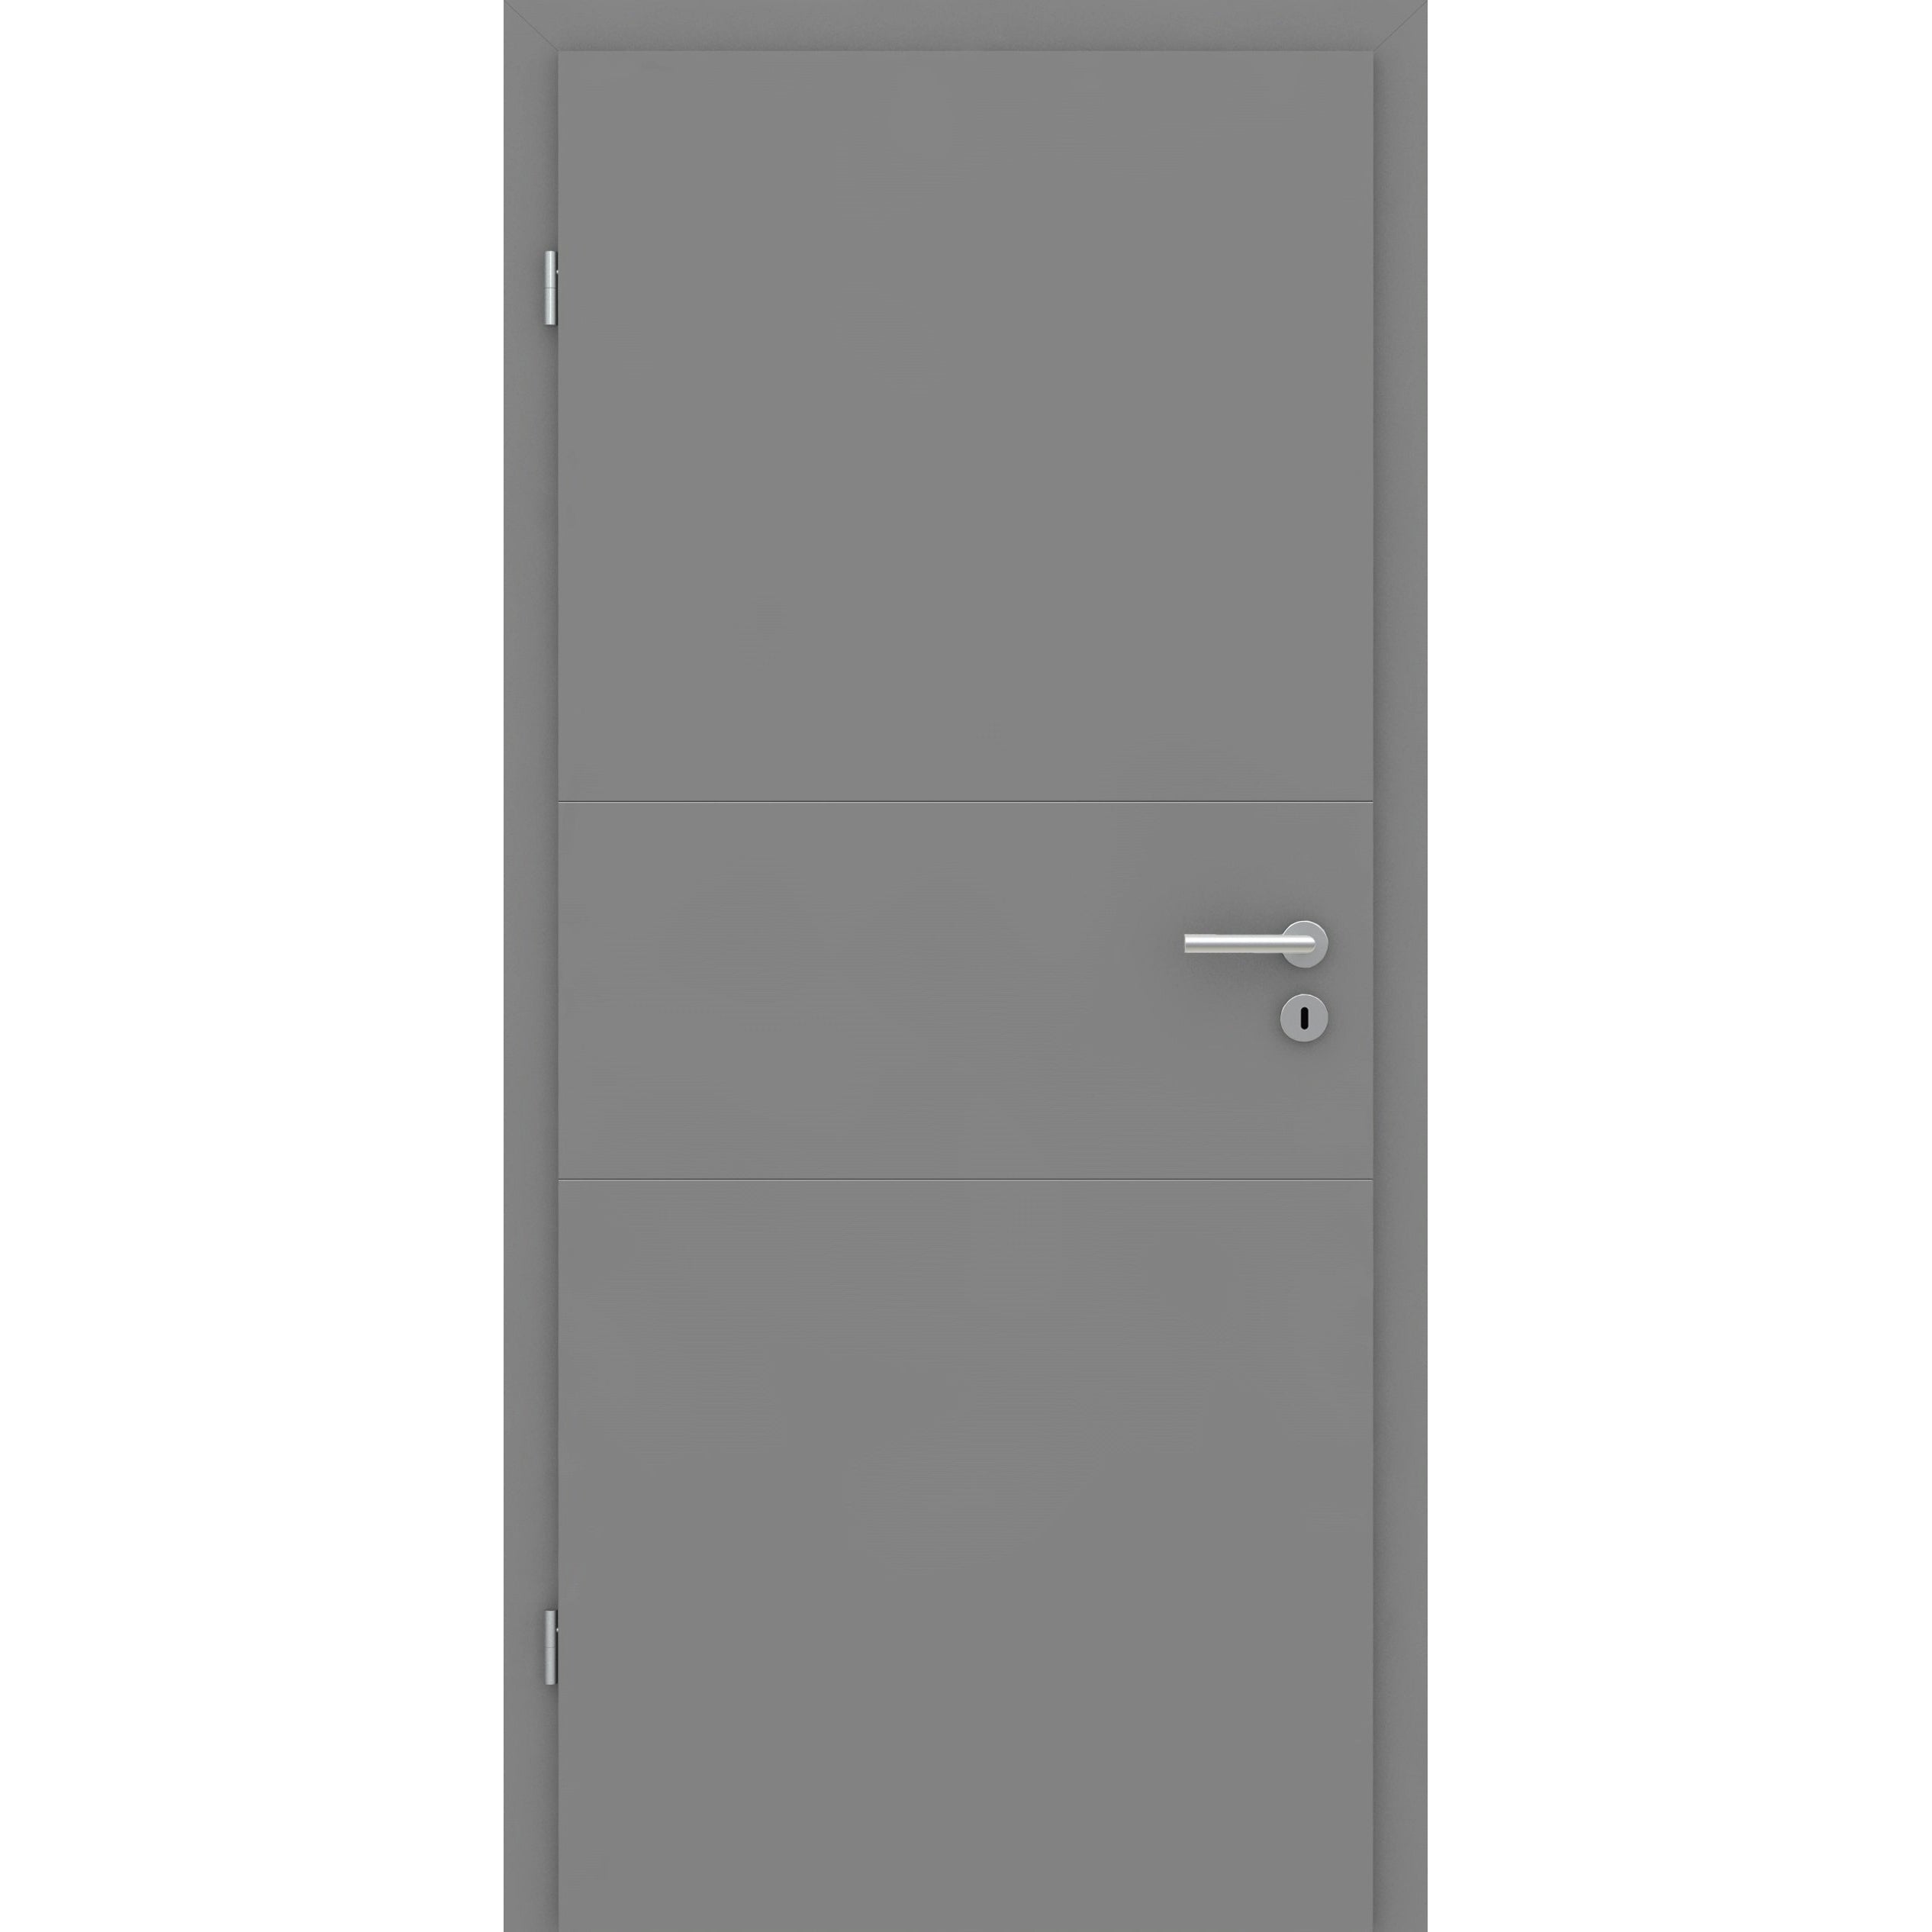 Wohnungseingangstür mit Zarge grau 2 Rillen quer Designkante SK2 / KK3 - Modell Designtür Q27